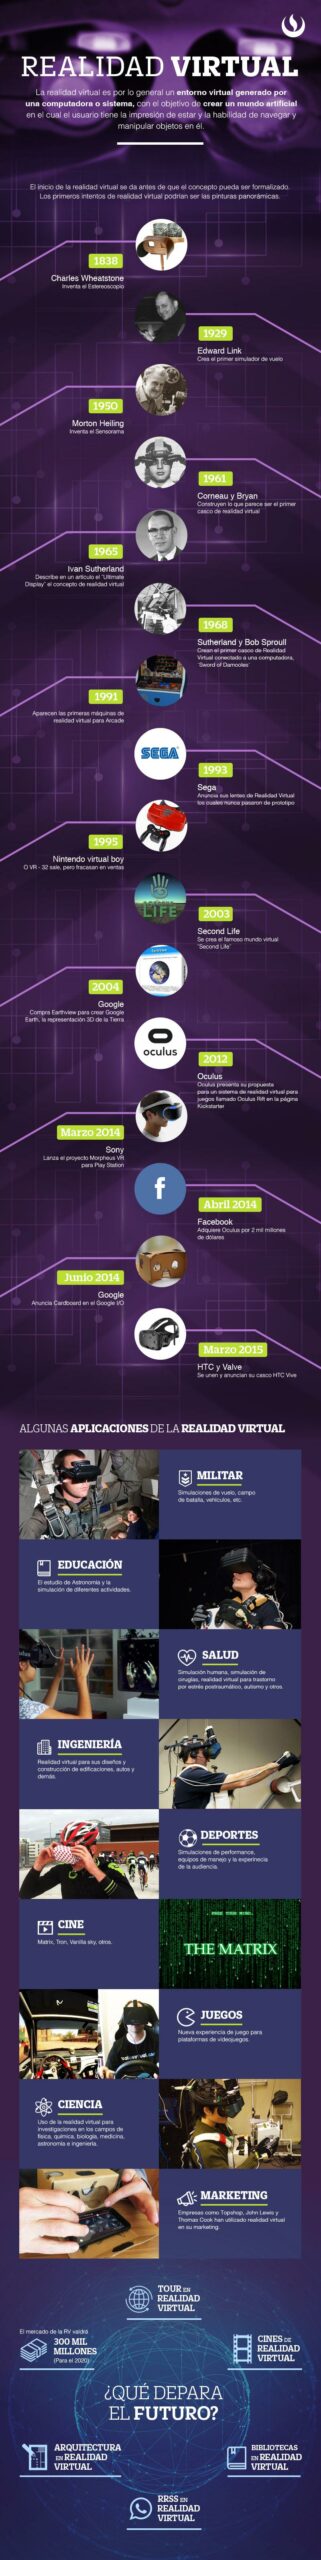 Infografía: Historia cronológica de la realidad virtual